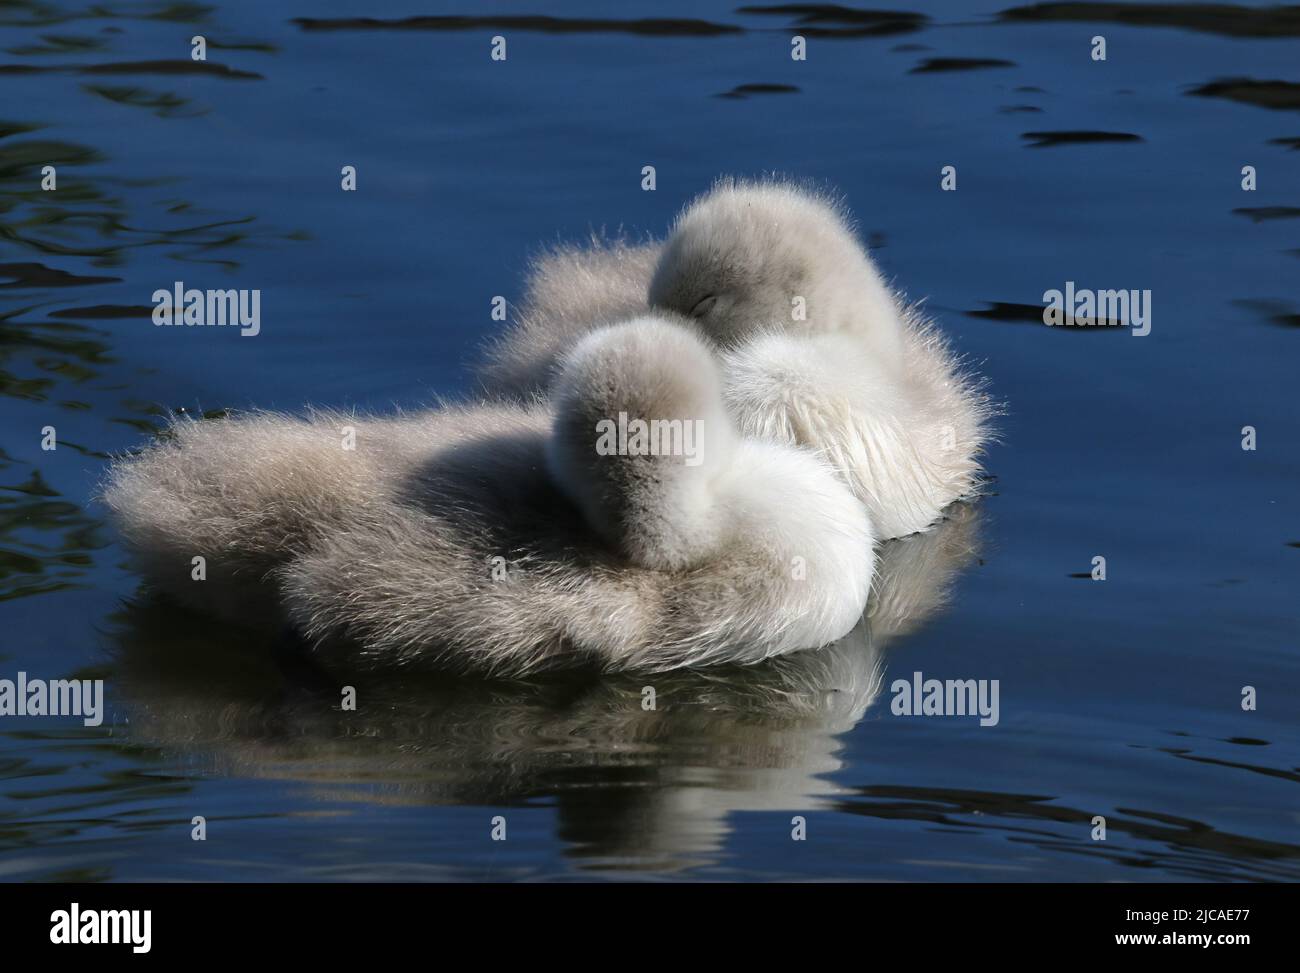 Dos redes de cisnes dormidas mientras flotan en el agua. Polluelos bonitos con suaves plumas de plumas suaves y esponjosas. Gran Canal, Dublín, Irlanda Foto de stock